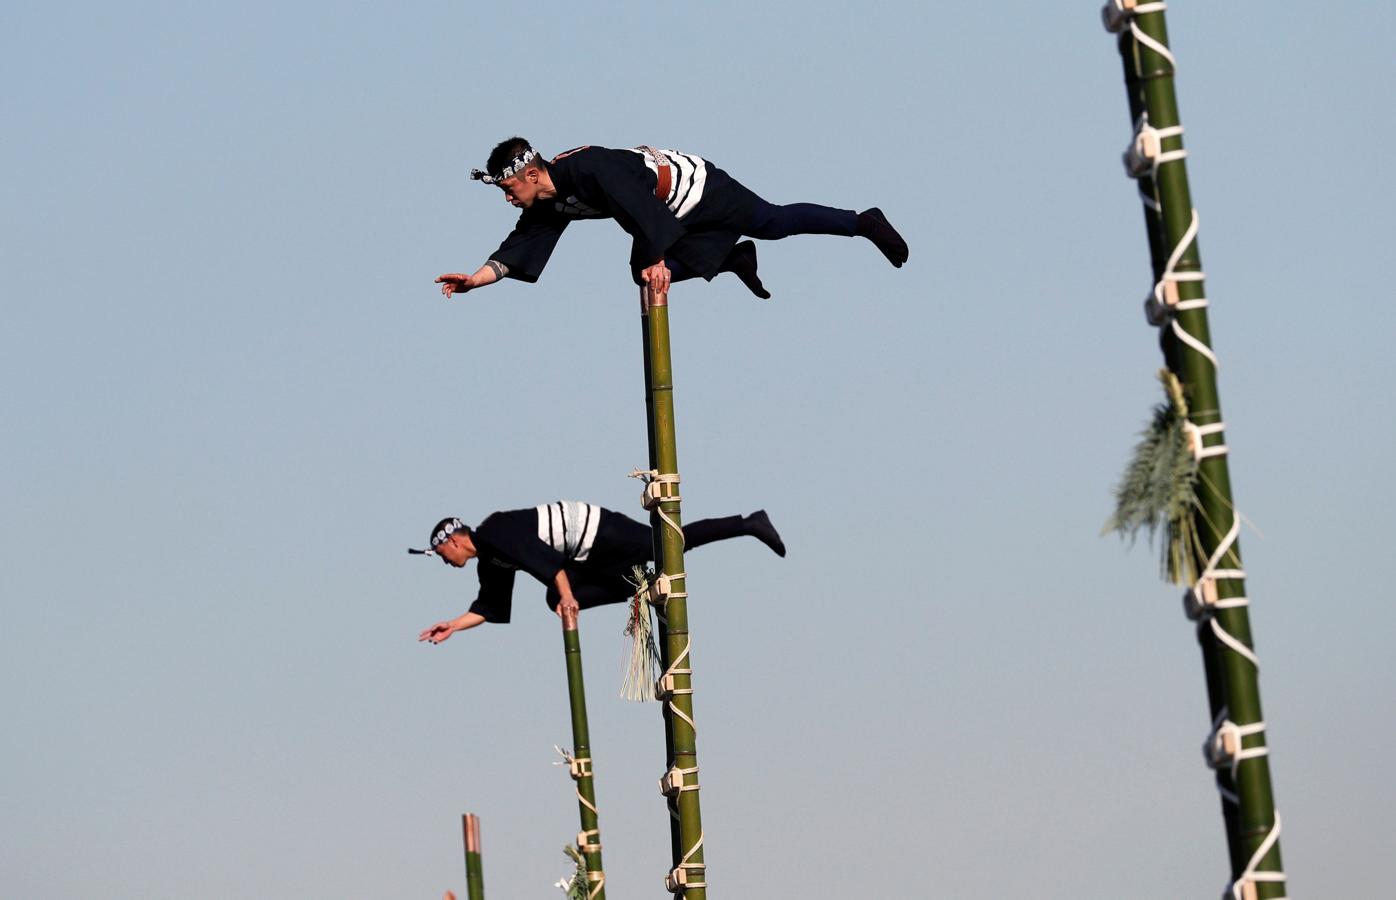 Los miembros de la Asociación de Preservación de Edo Firemanship muestran sus habilidades de equilibrio sobre escaleras de bambú durante la revisión de Fuego de Año Nuevo del Departamento de Bomberos de Tokio